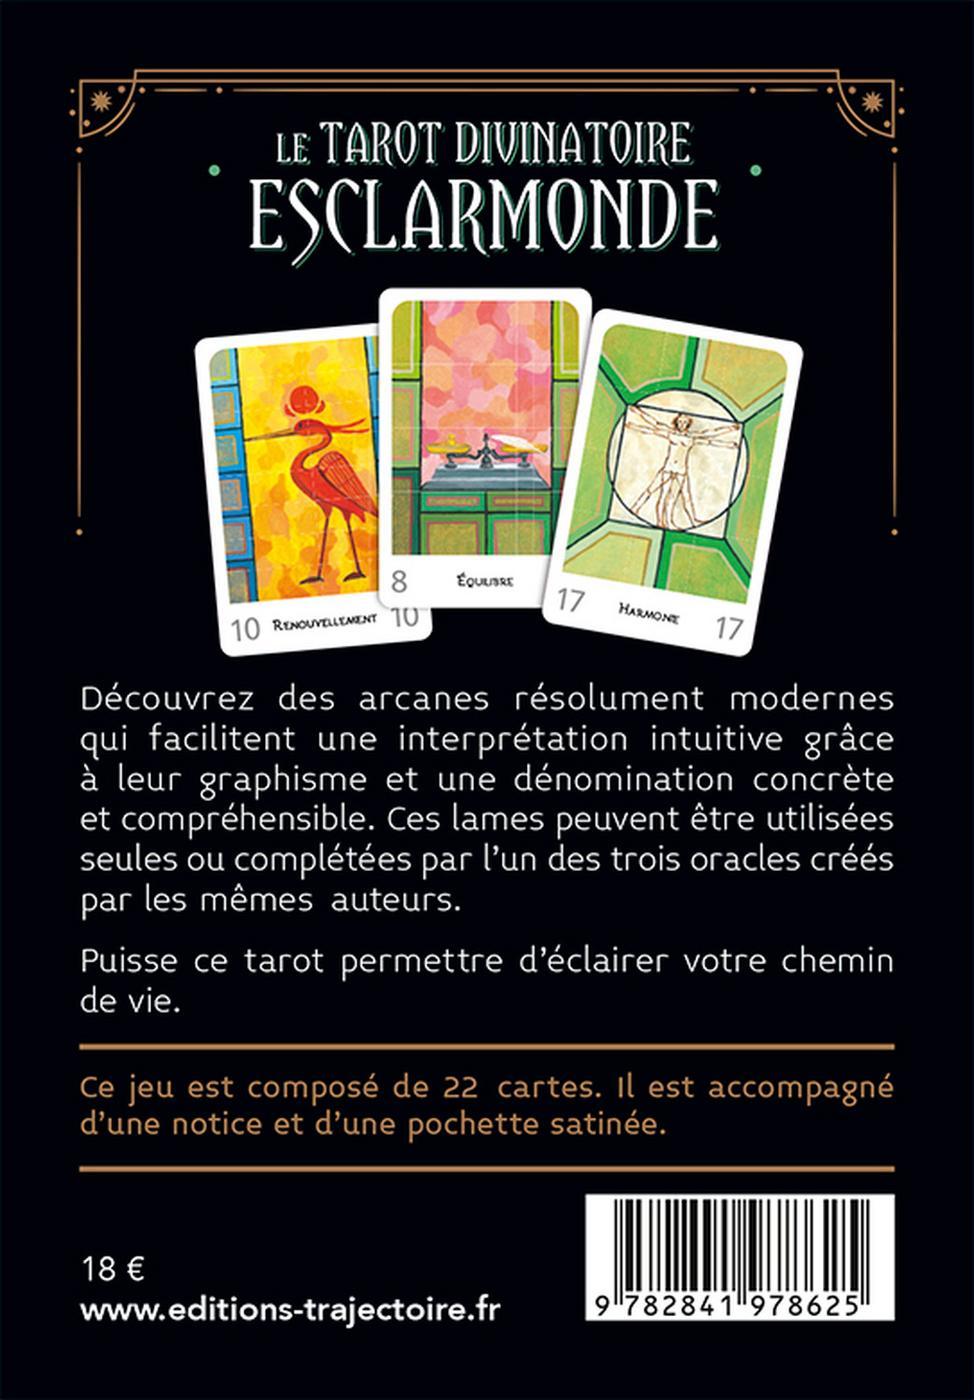 Dictionnaire officiel du tarot divinatoire: Correspondance